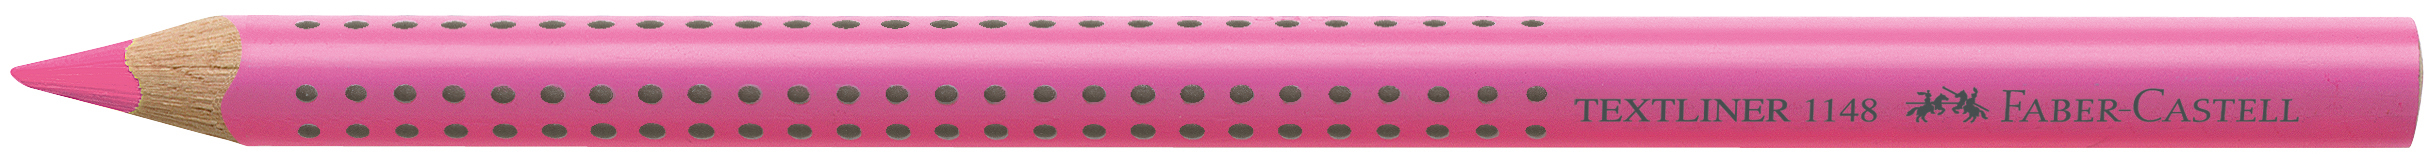 FABER-CASTELL Textliner Jumbo Grip 5mm 114828 rose